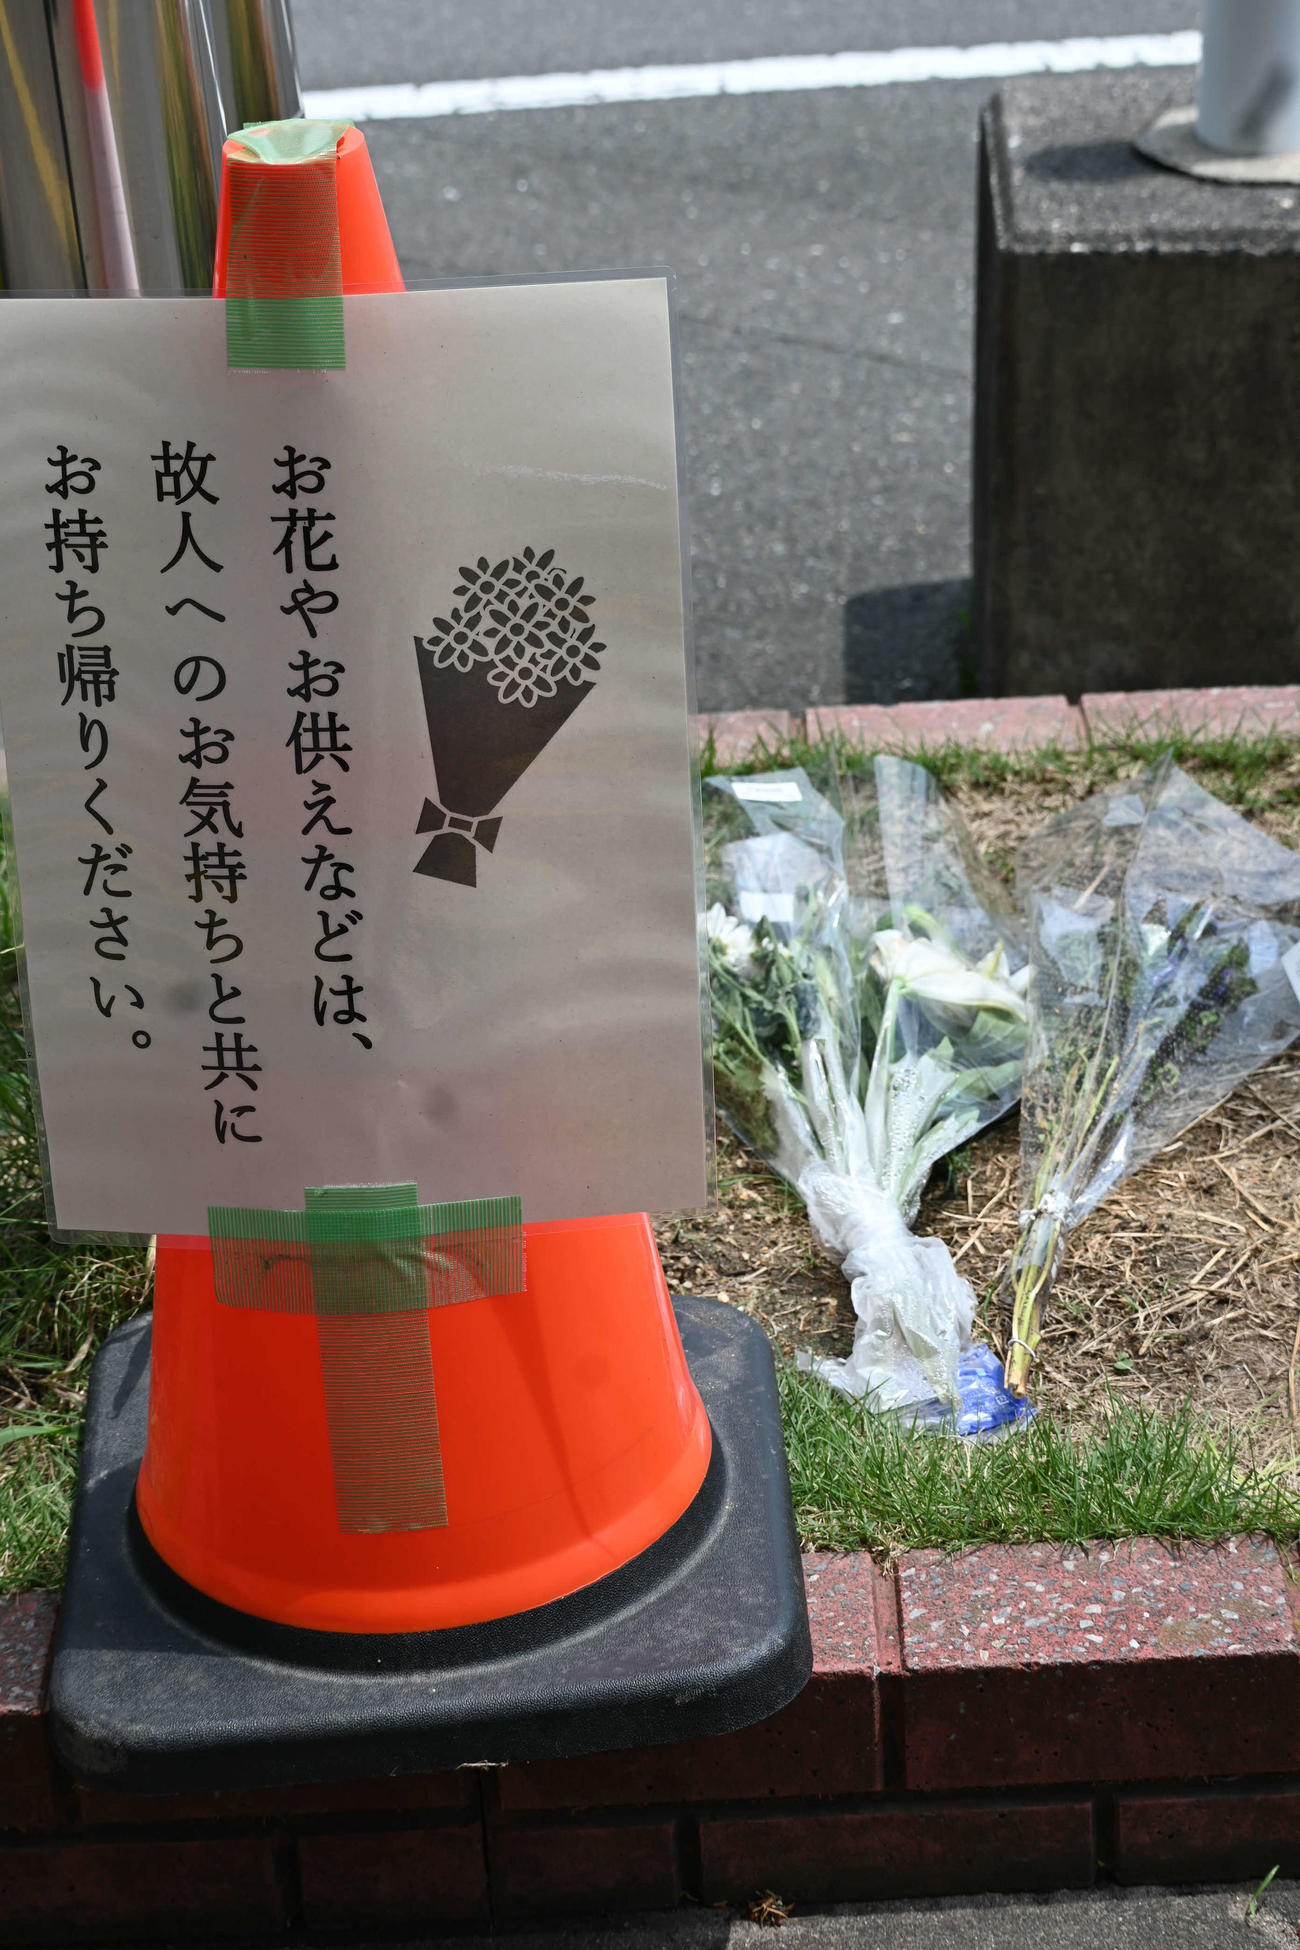 事件現場周辺には献花などの自粛を呼びかける貼り紙（撮影・松浦隆司）